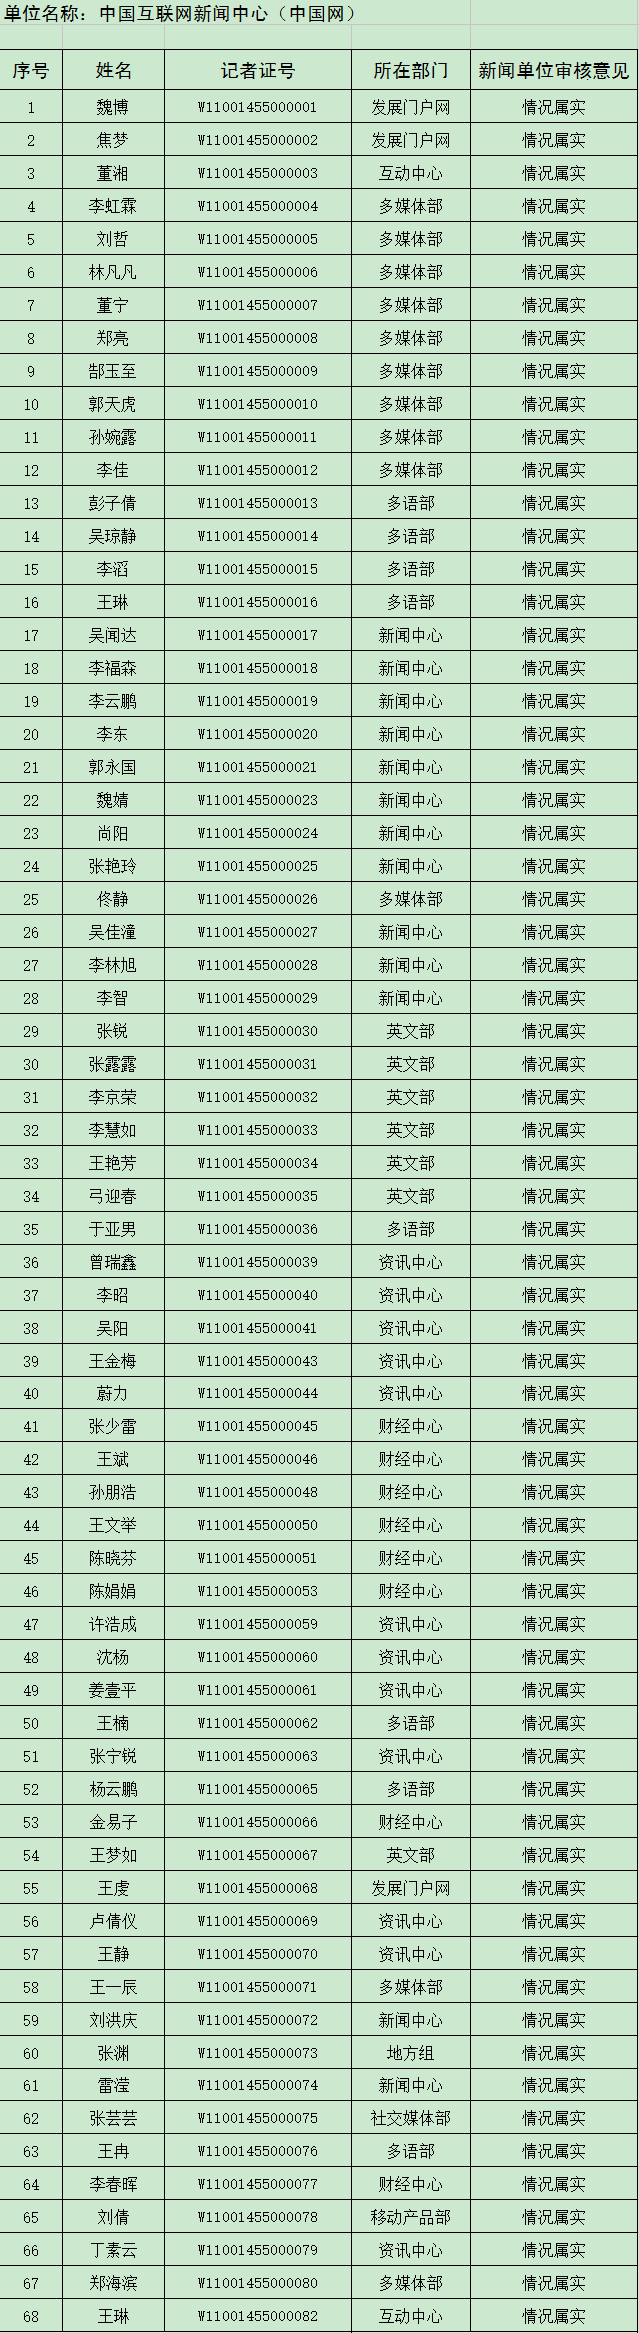 中国网新闻记者证2016年度核验通过人员名单公示